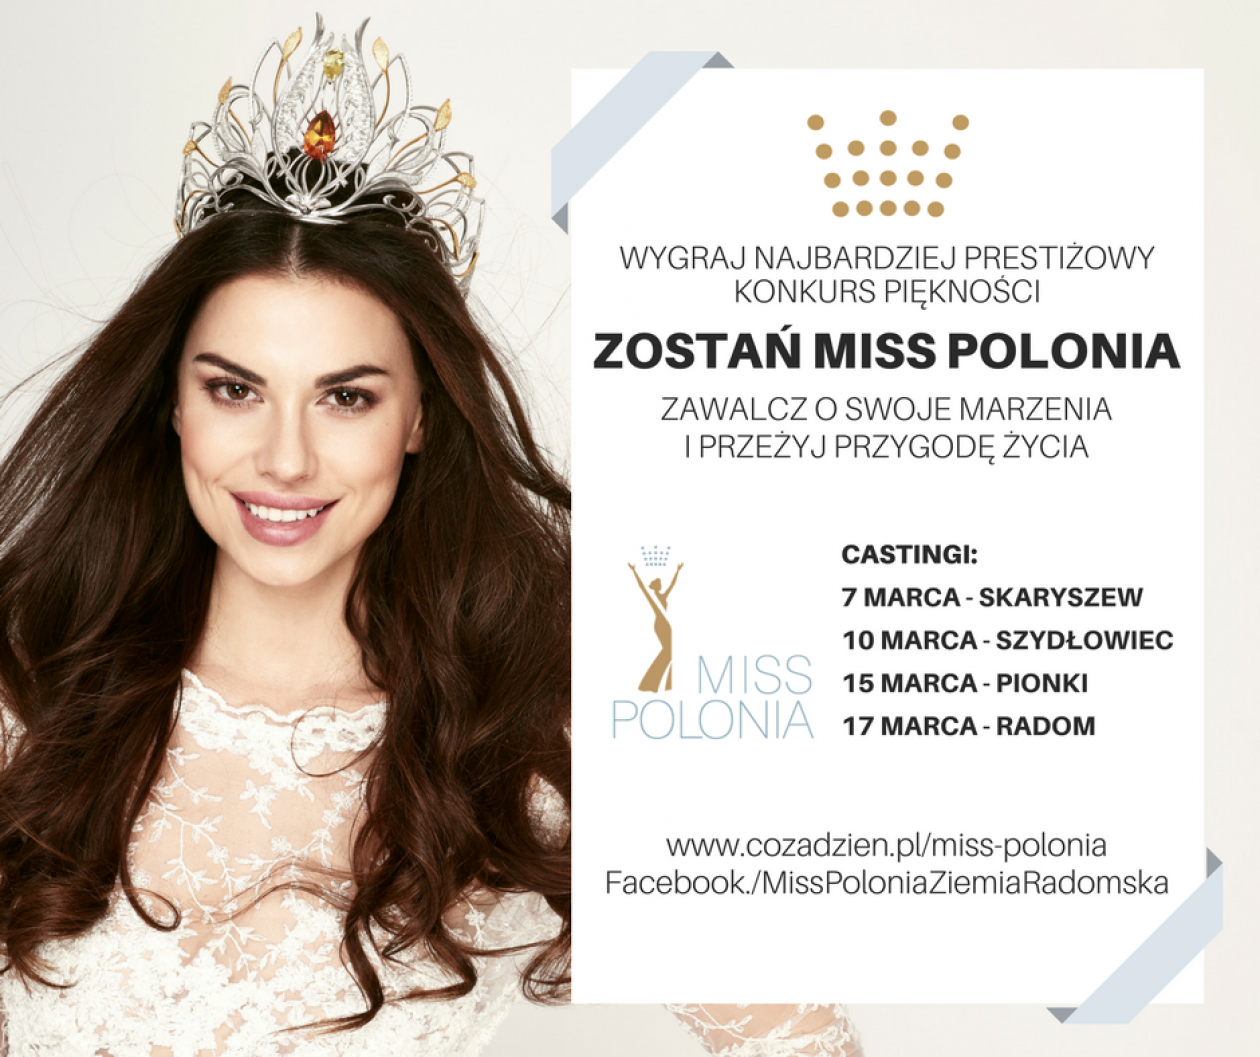 MISS POLONIA - We wtorek casting w Skaryszewie